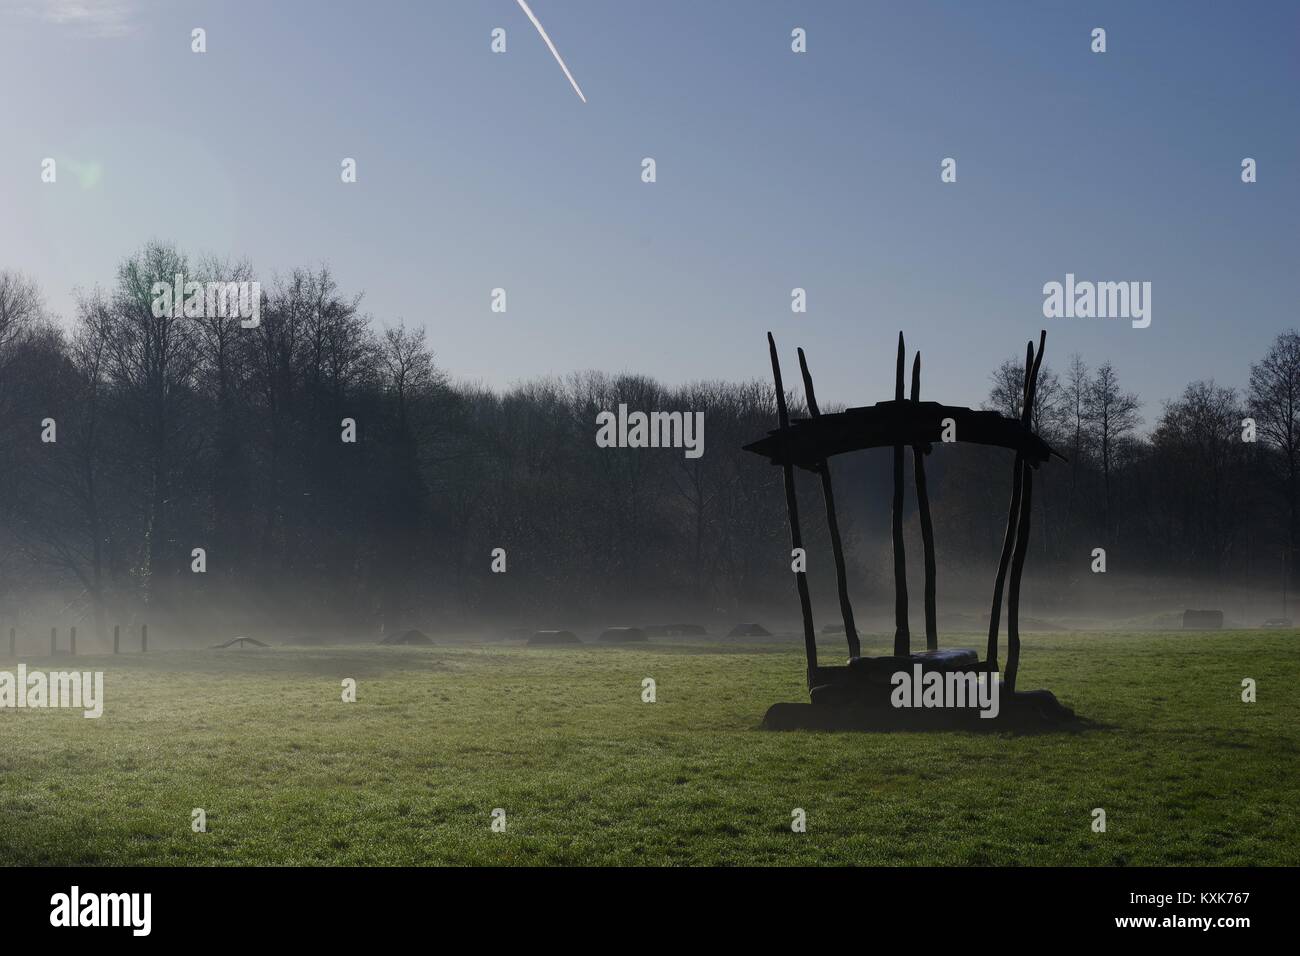 Abri banc rustique en silhouette sur un hivers brumeux matin sur un champ d'herbe par Ludwell Valley Park. Exeter, Devon, UK. Janvier, 2018. Banque D'Images